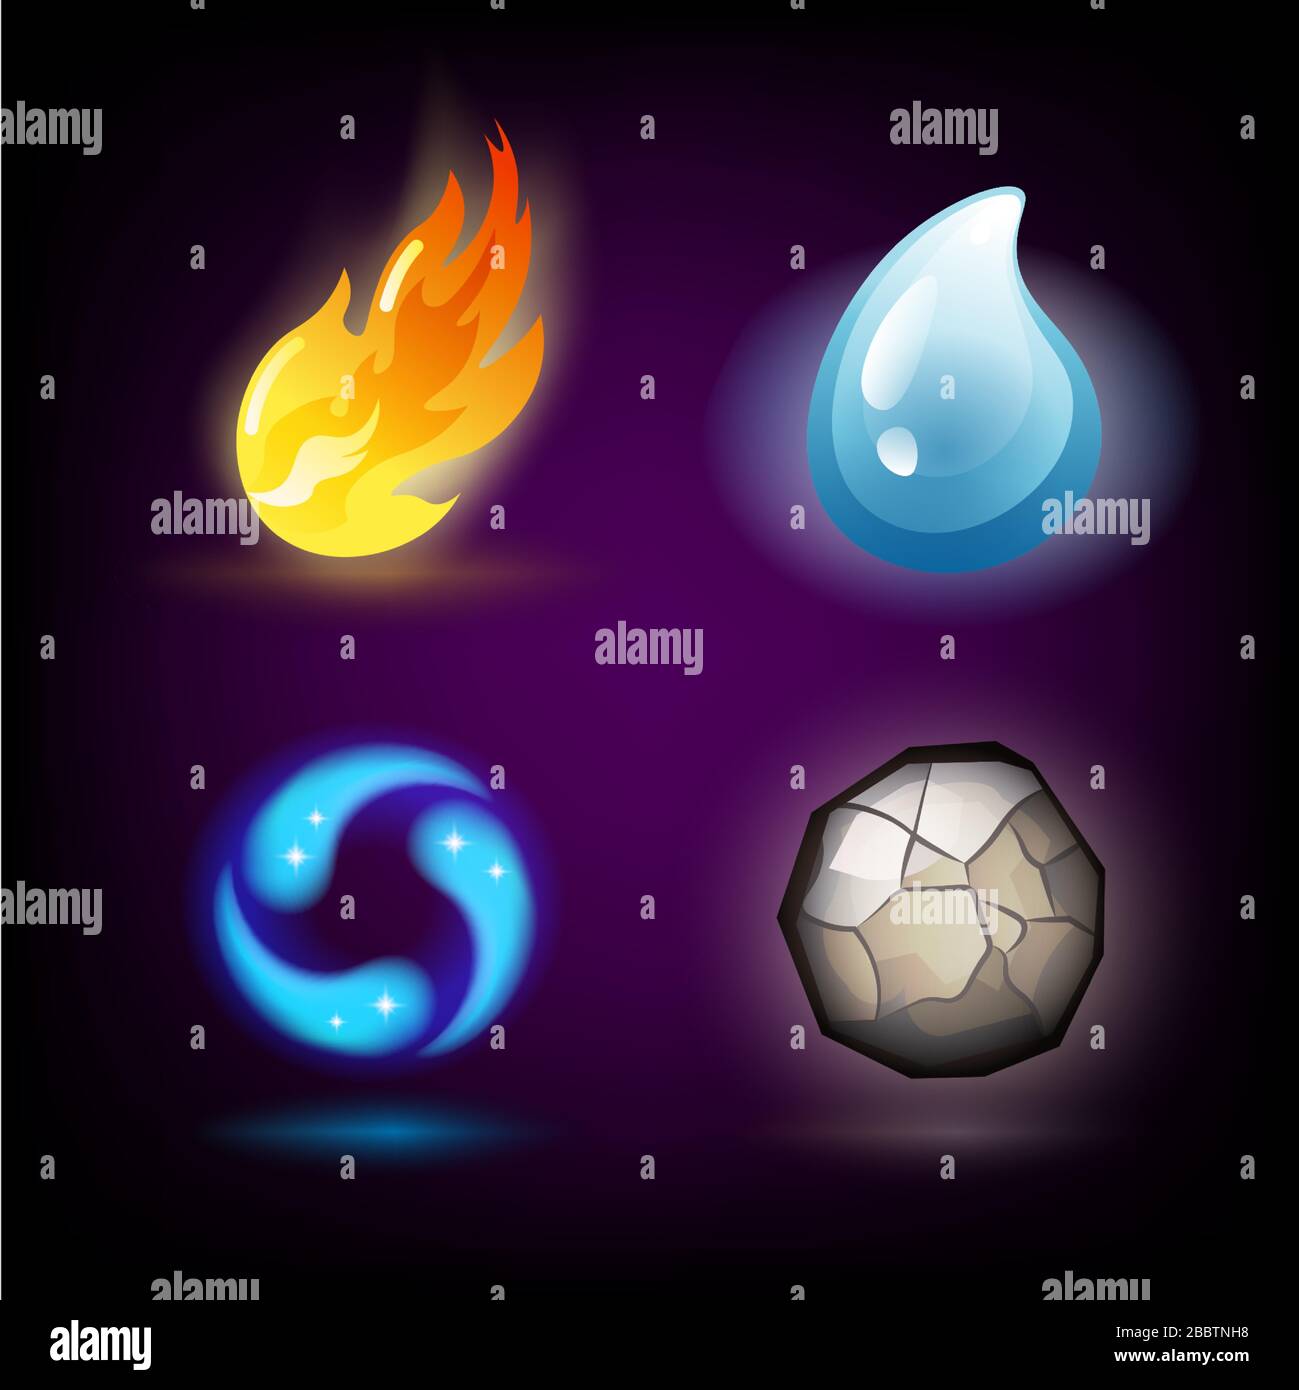 Quattro forze o elementi naturali: Acqua, fuoco, terra, aria. Elementi di design su sfondo scuro. Modelli per energie rinnovabili o loghi ecologici, emblemi Illustrazione Vettoriale